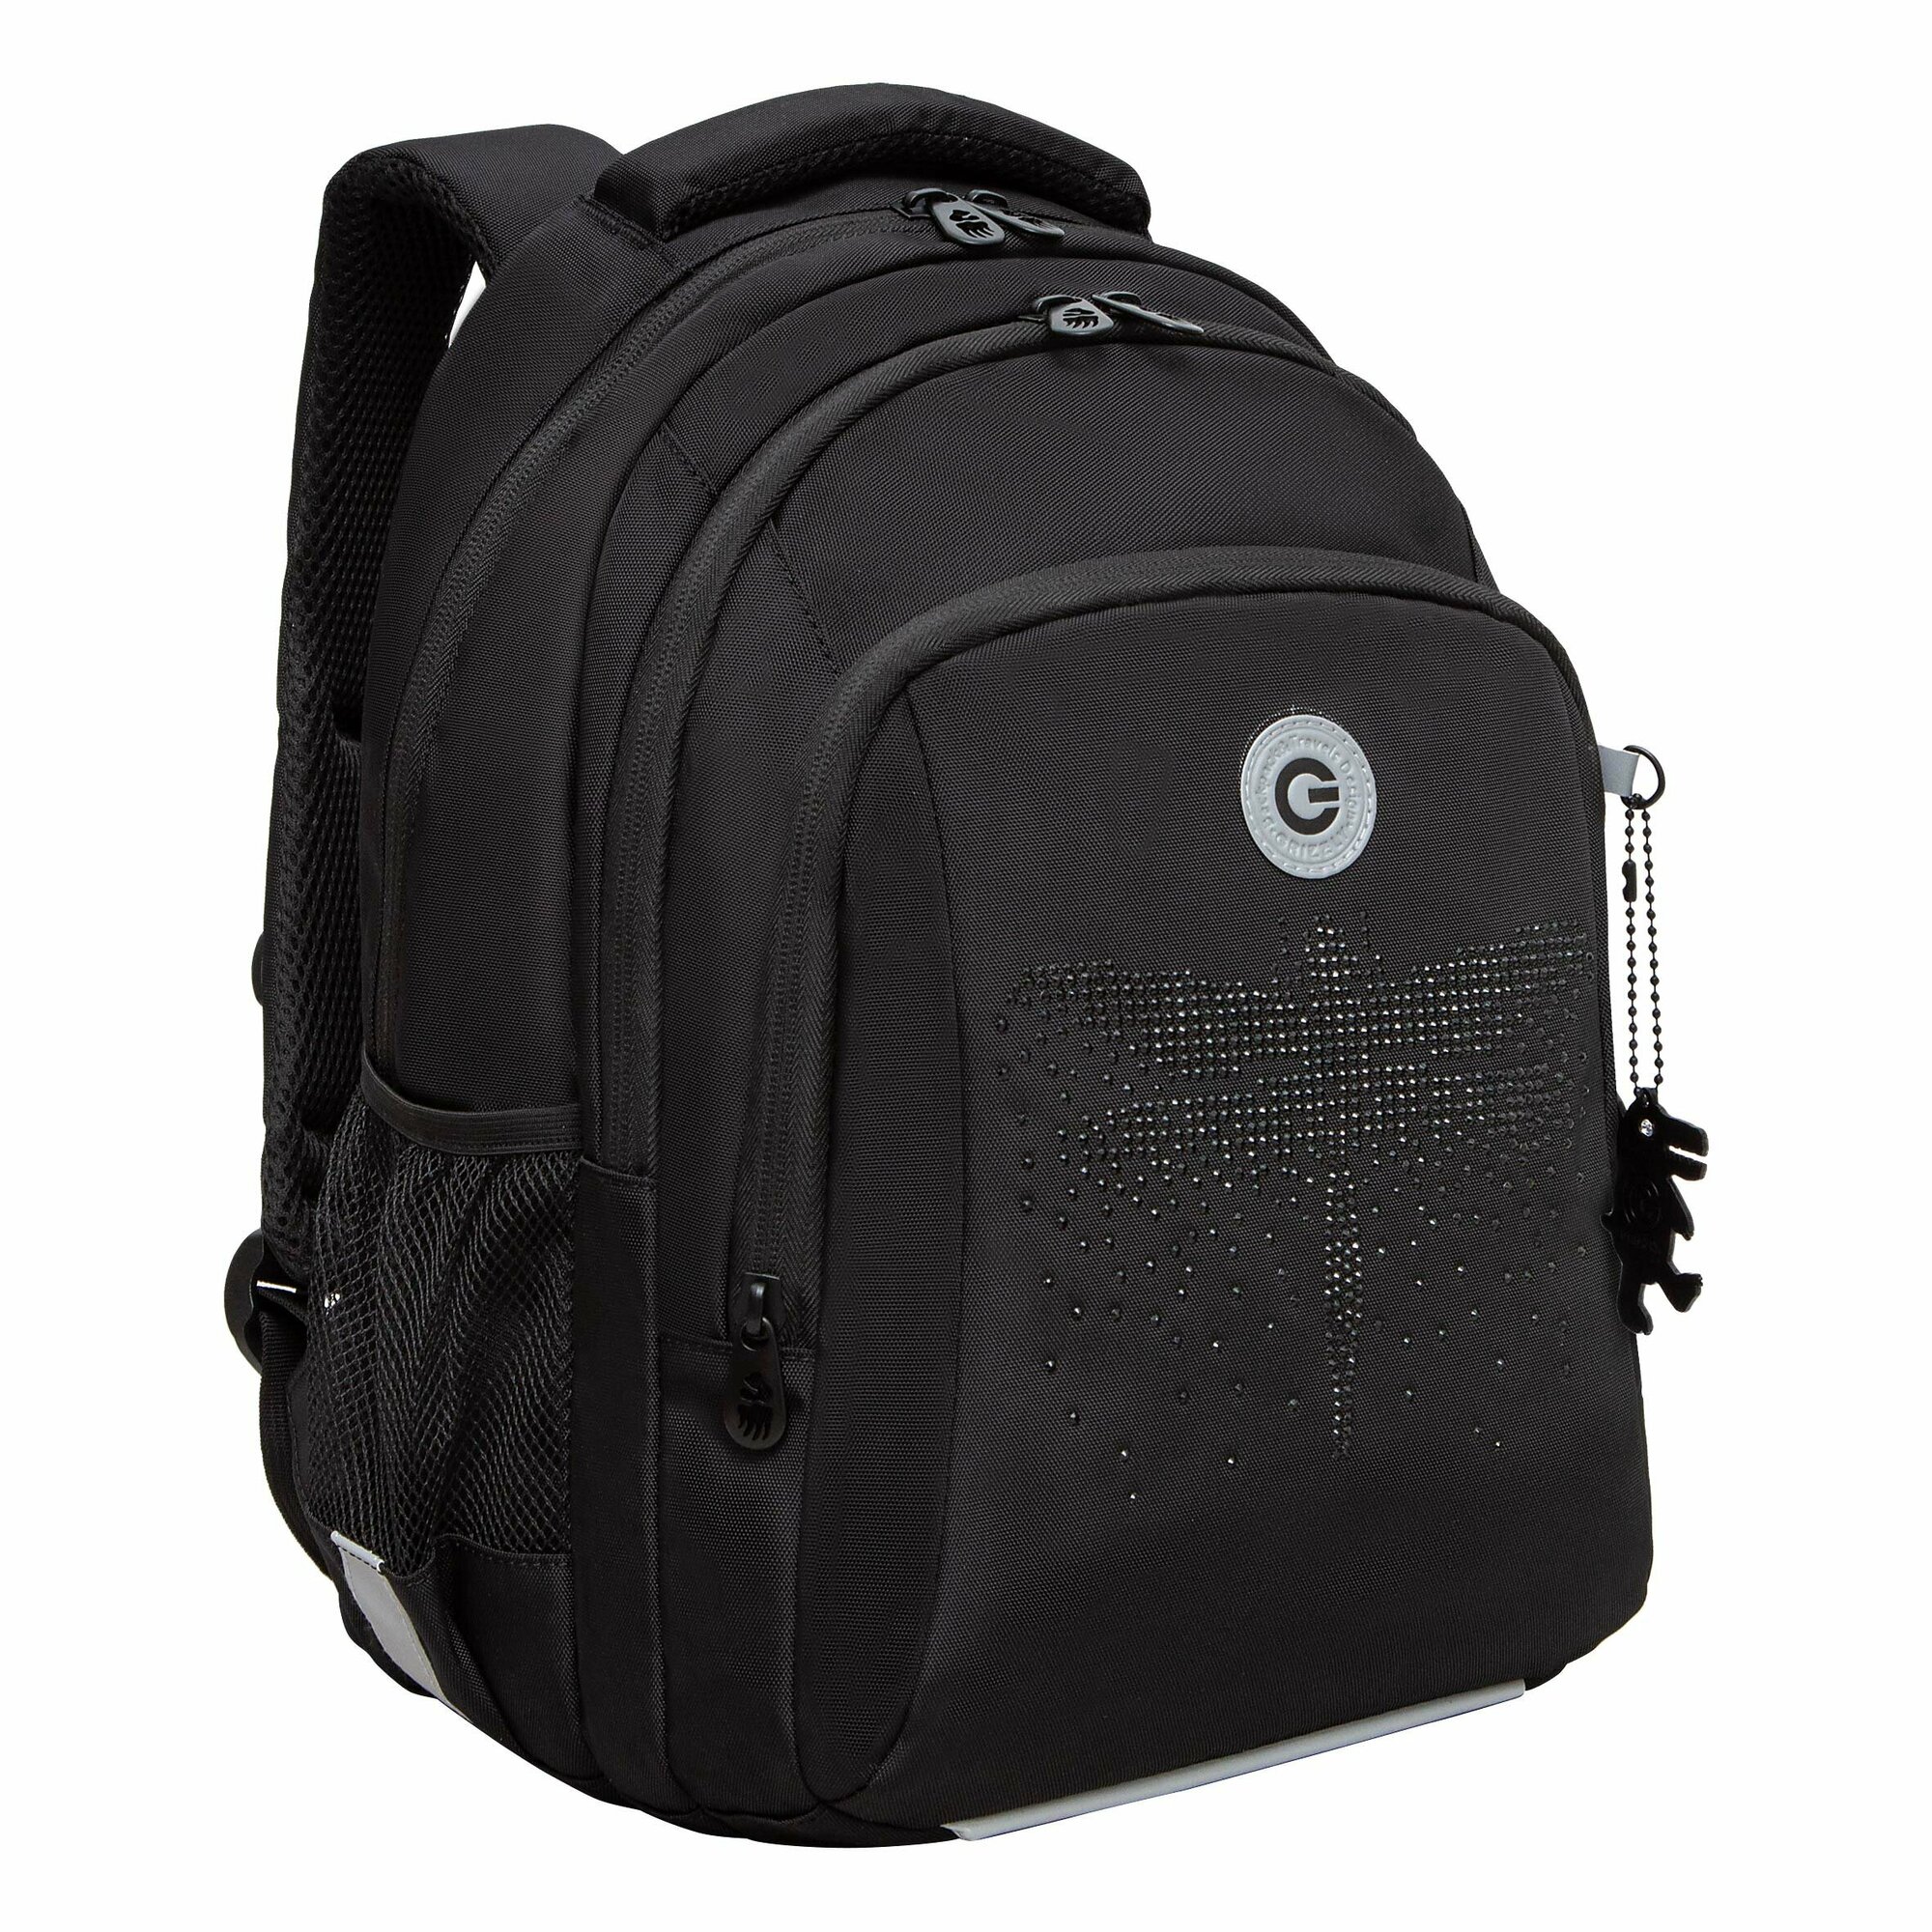 Рюкзак школьный GRIZZLY с карманом для ноутбука 13", анатомической спинкой, тремя отделениями, для девочки RG-461-1/1